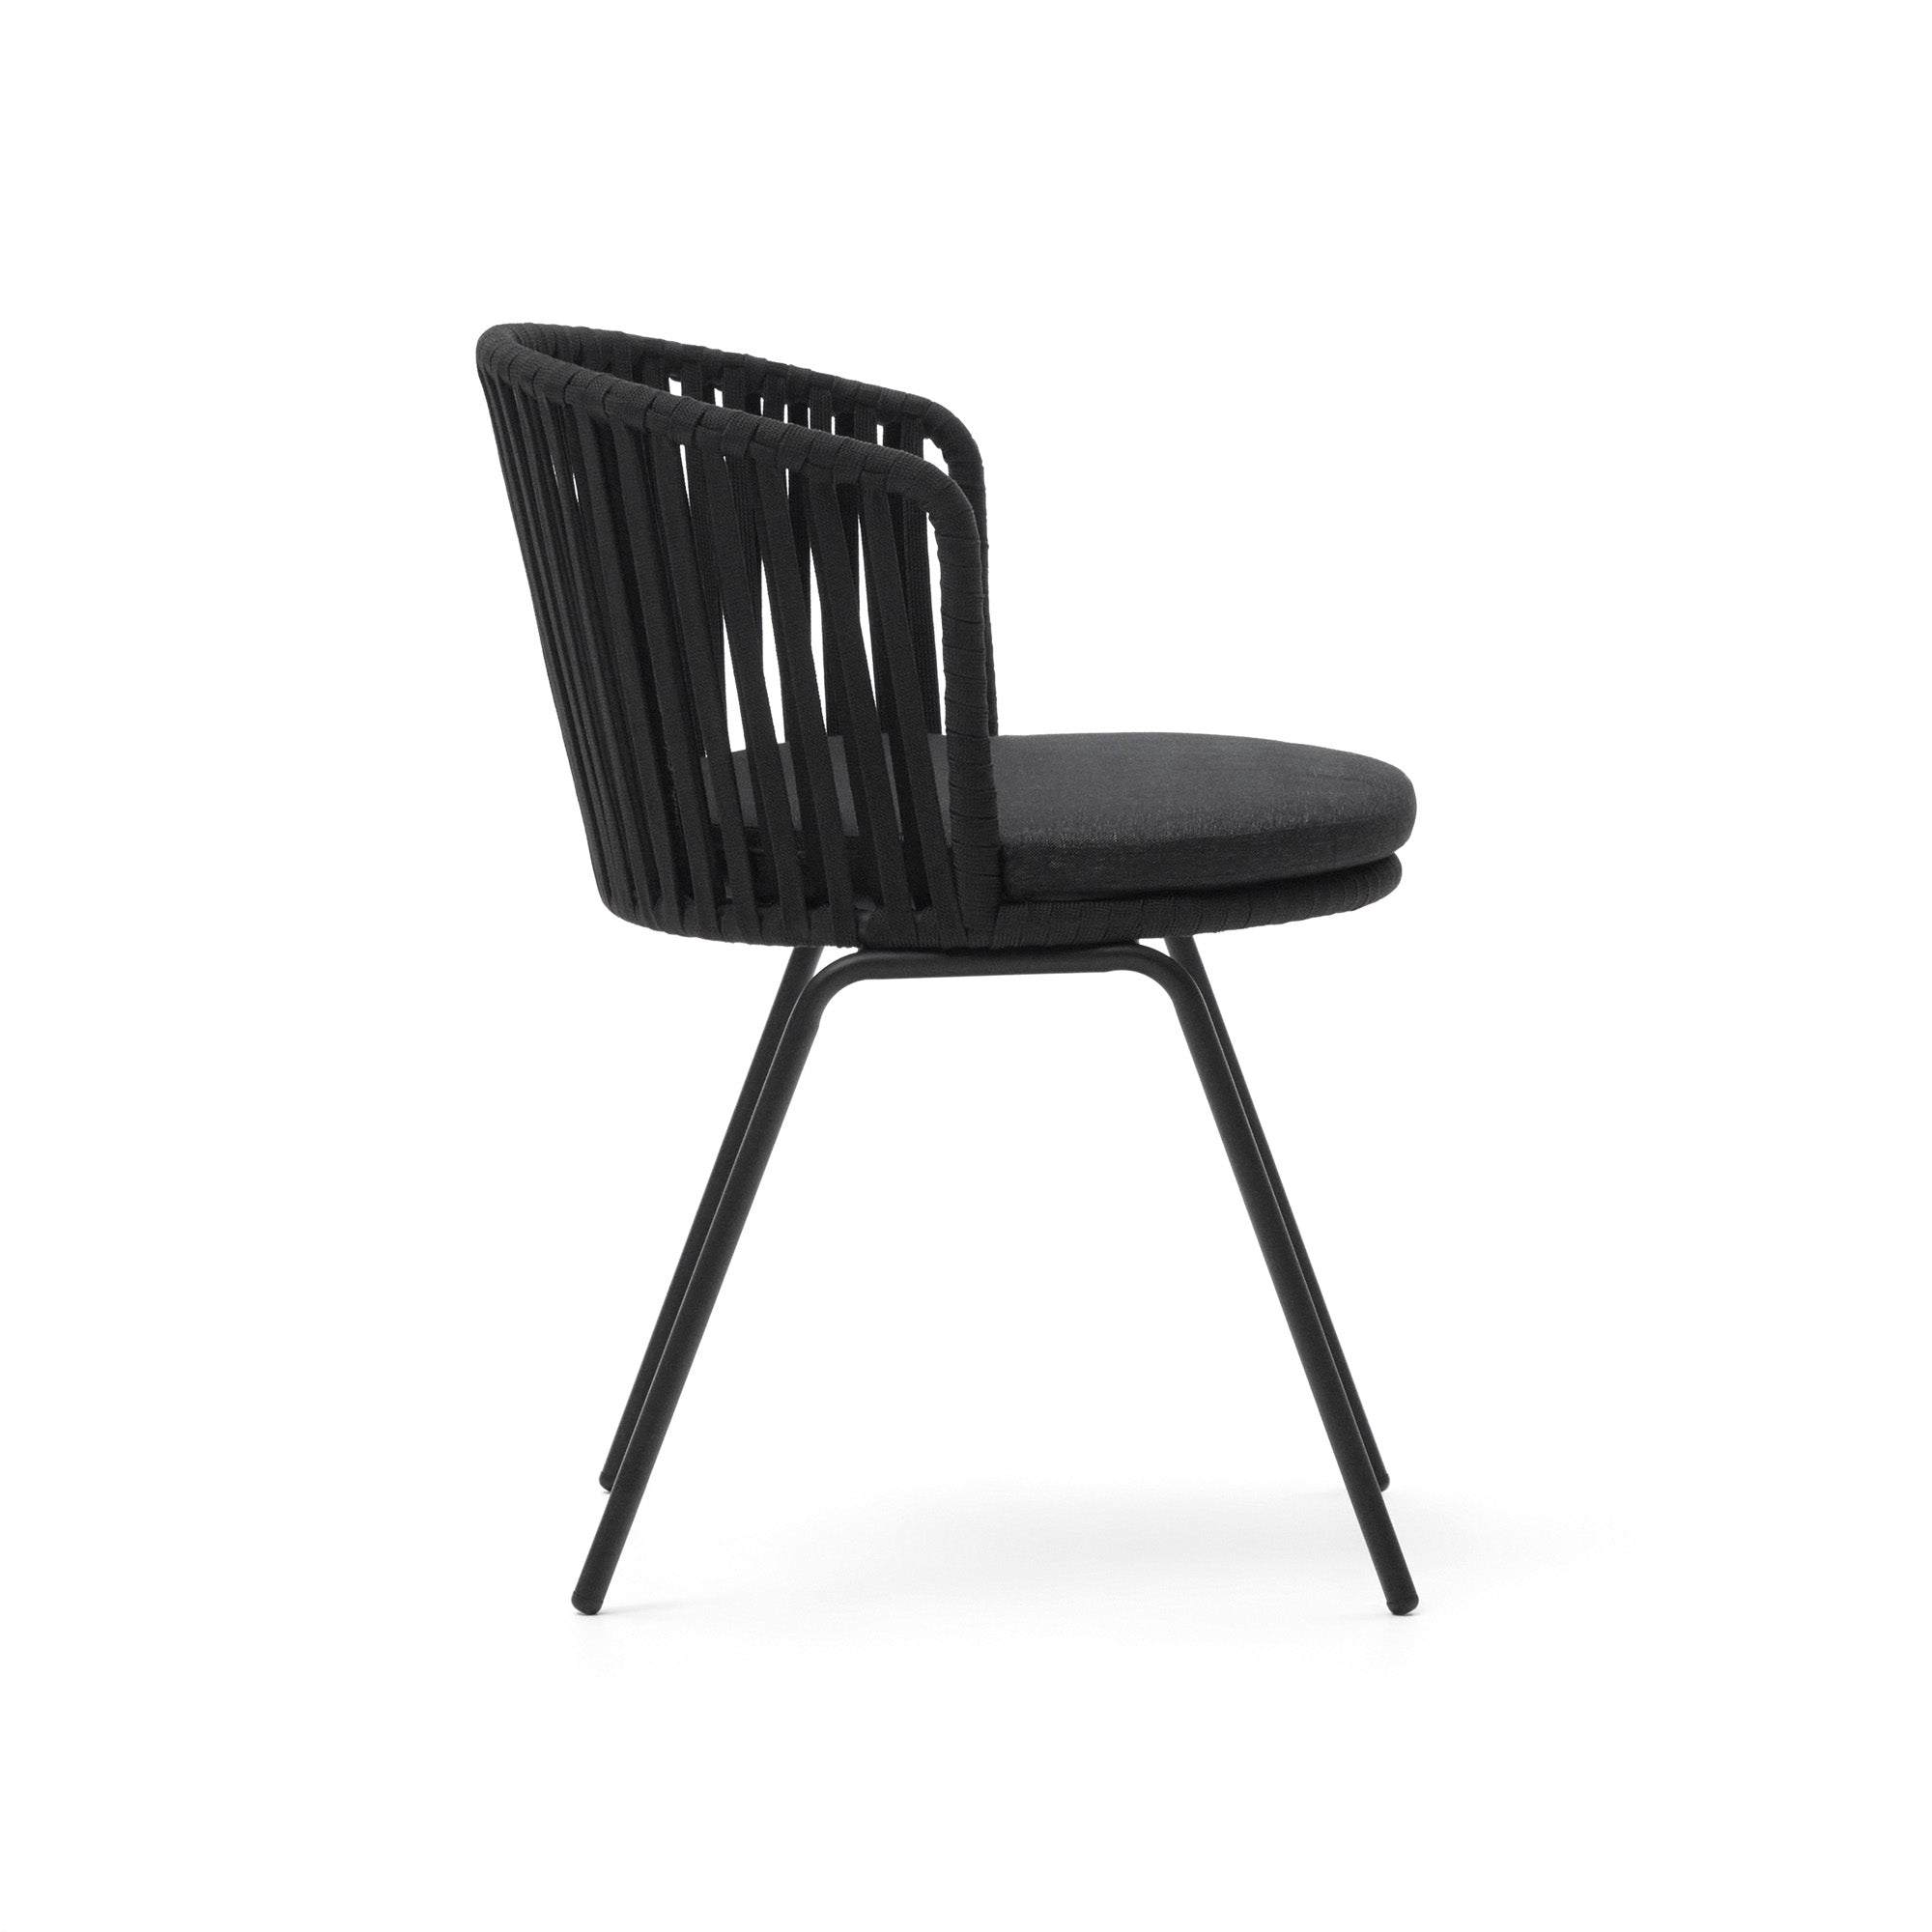 Saconca kültéri szék zsinórral és acélból. fekete festett kivitelben.